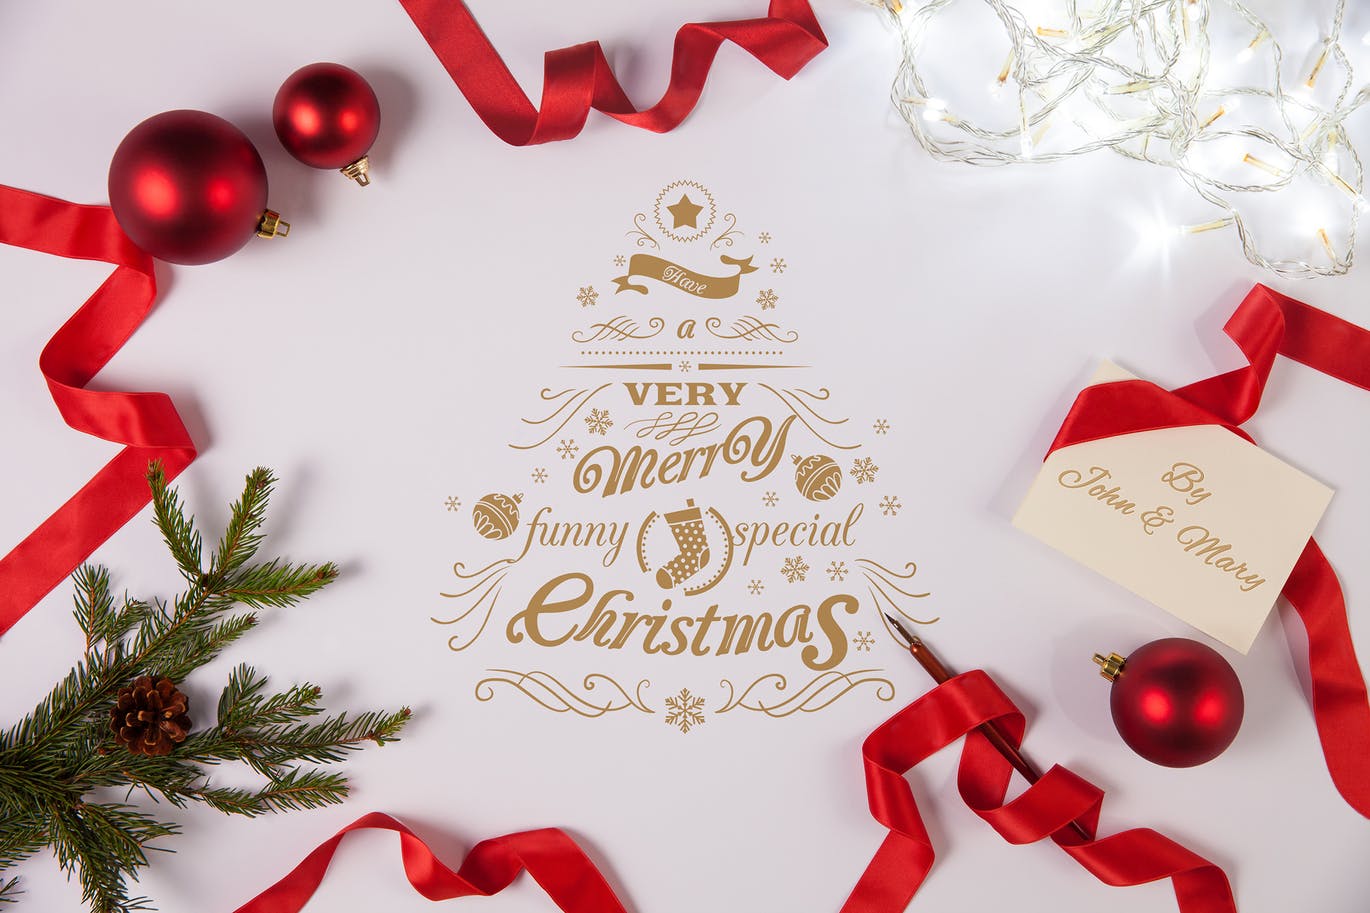 简约优雅风格圣诞节贺卡设计图样机第一素材精选模板v2 Clean and Elegant Christmas Greetings Mockups #2插图